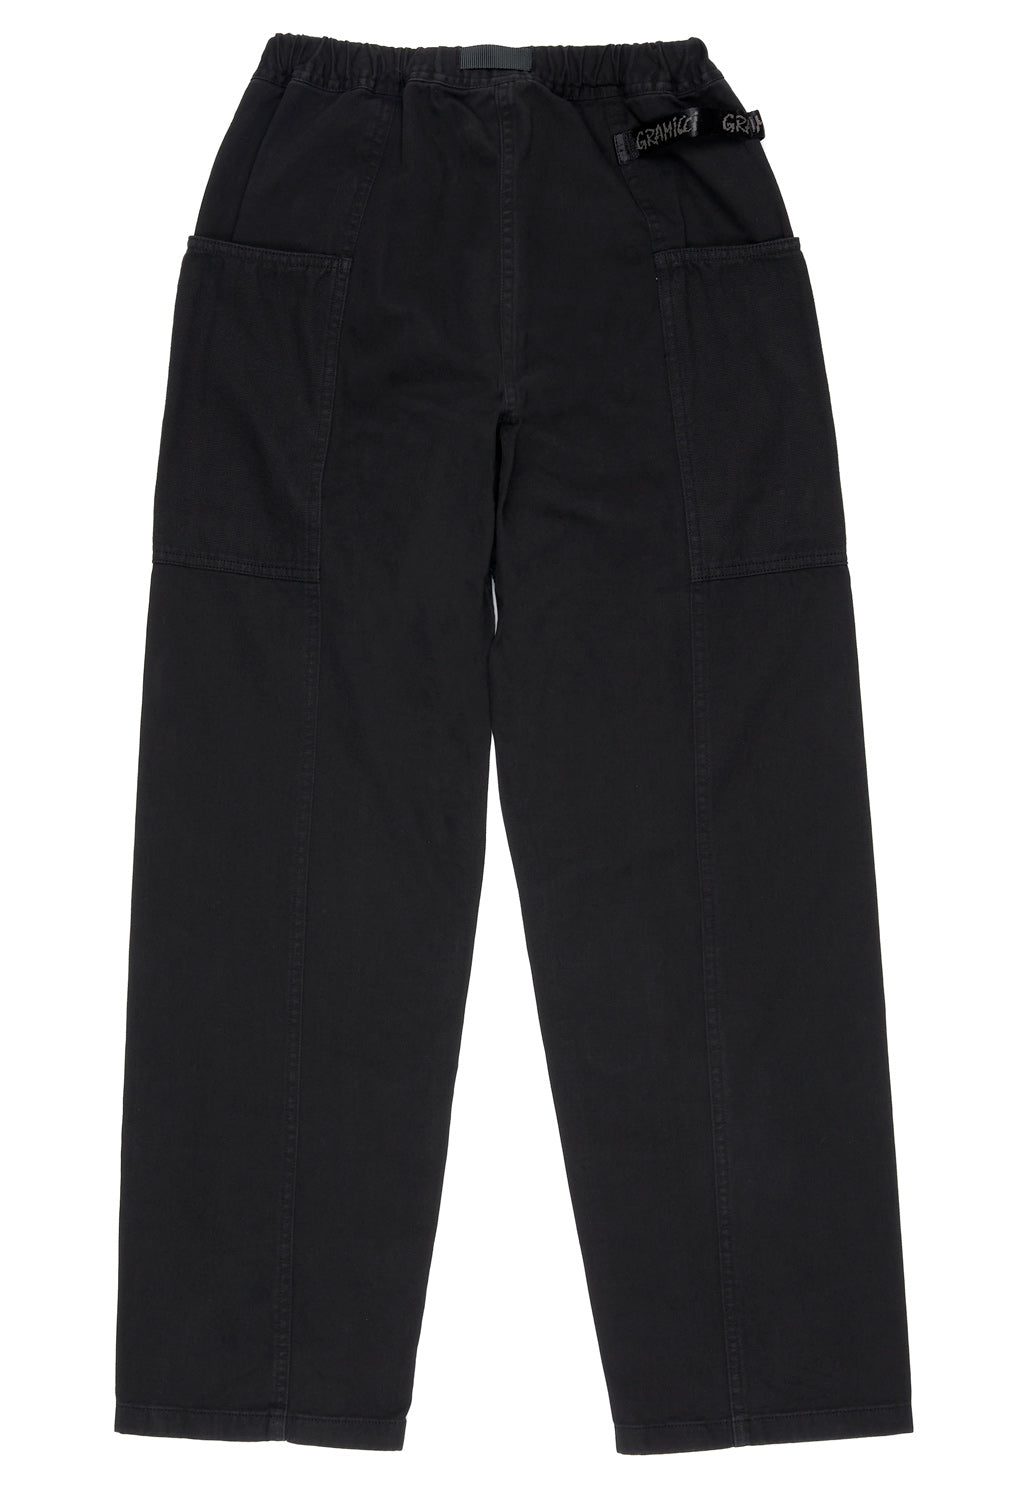 Gramicci Men's Gadget Pants - Black